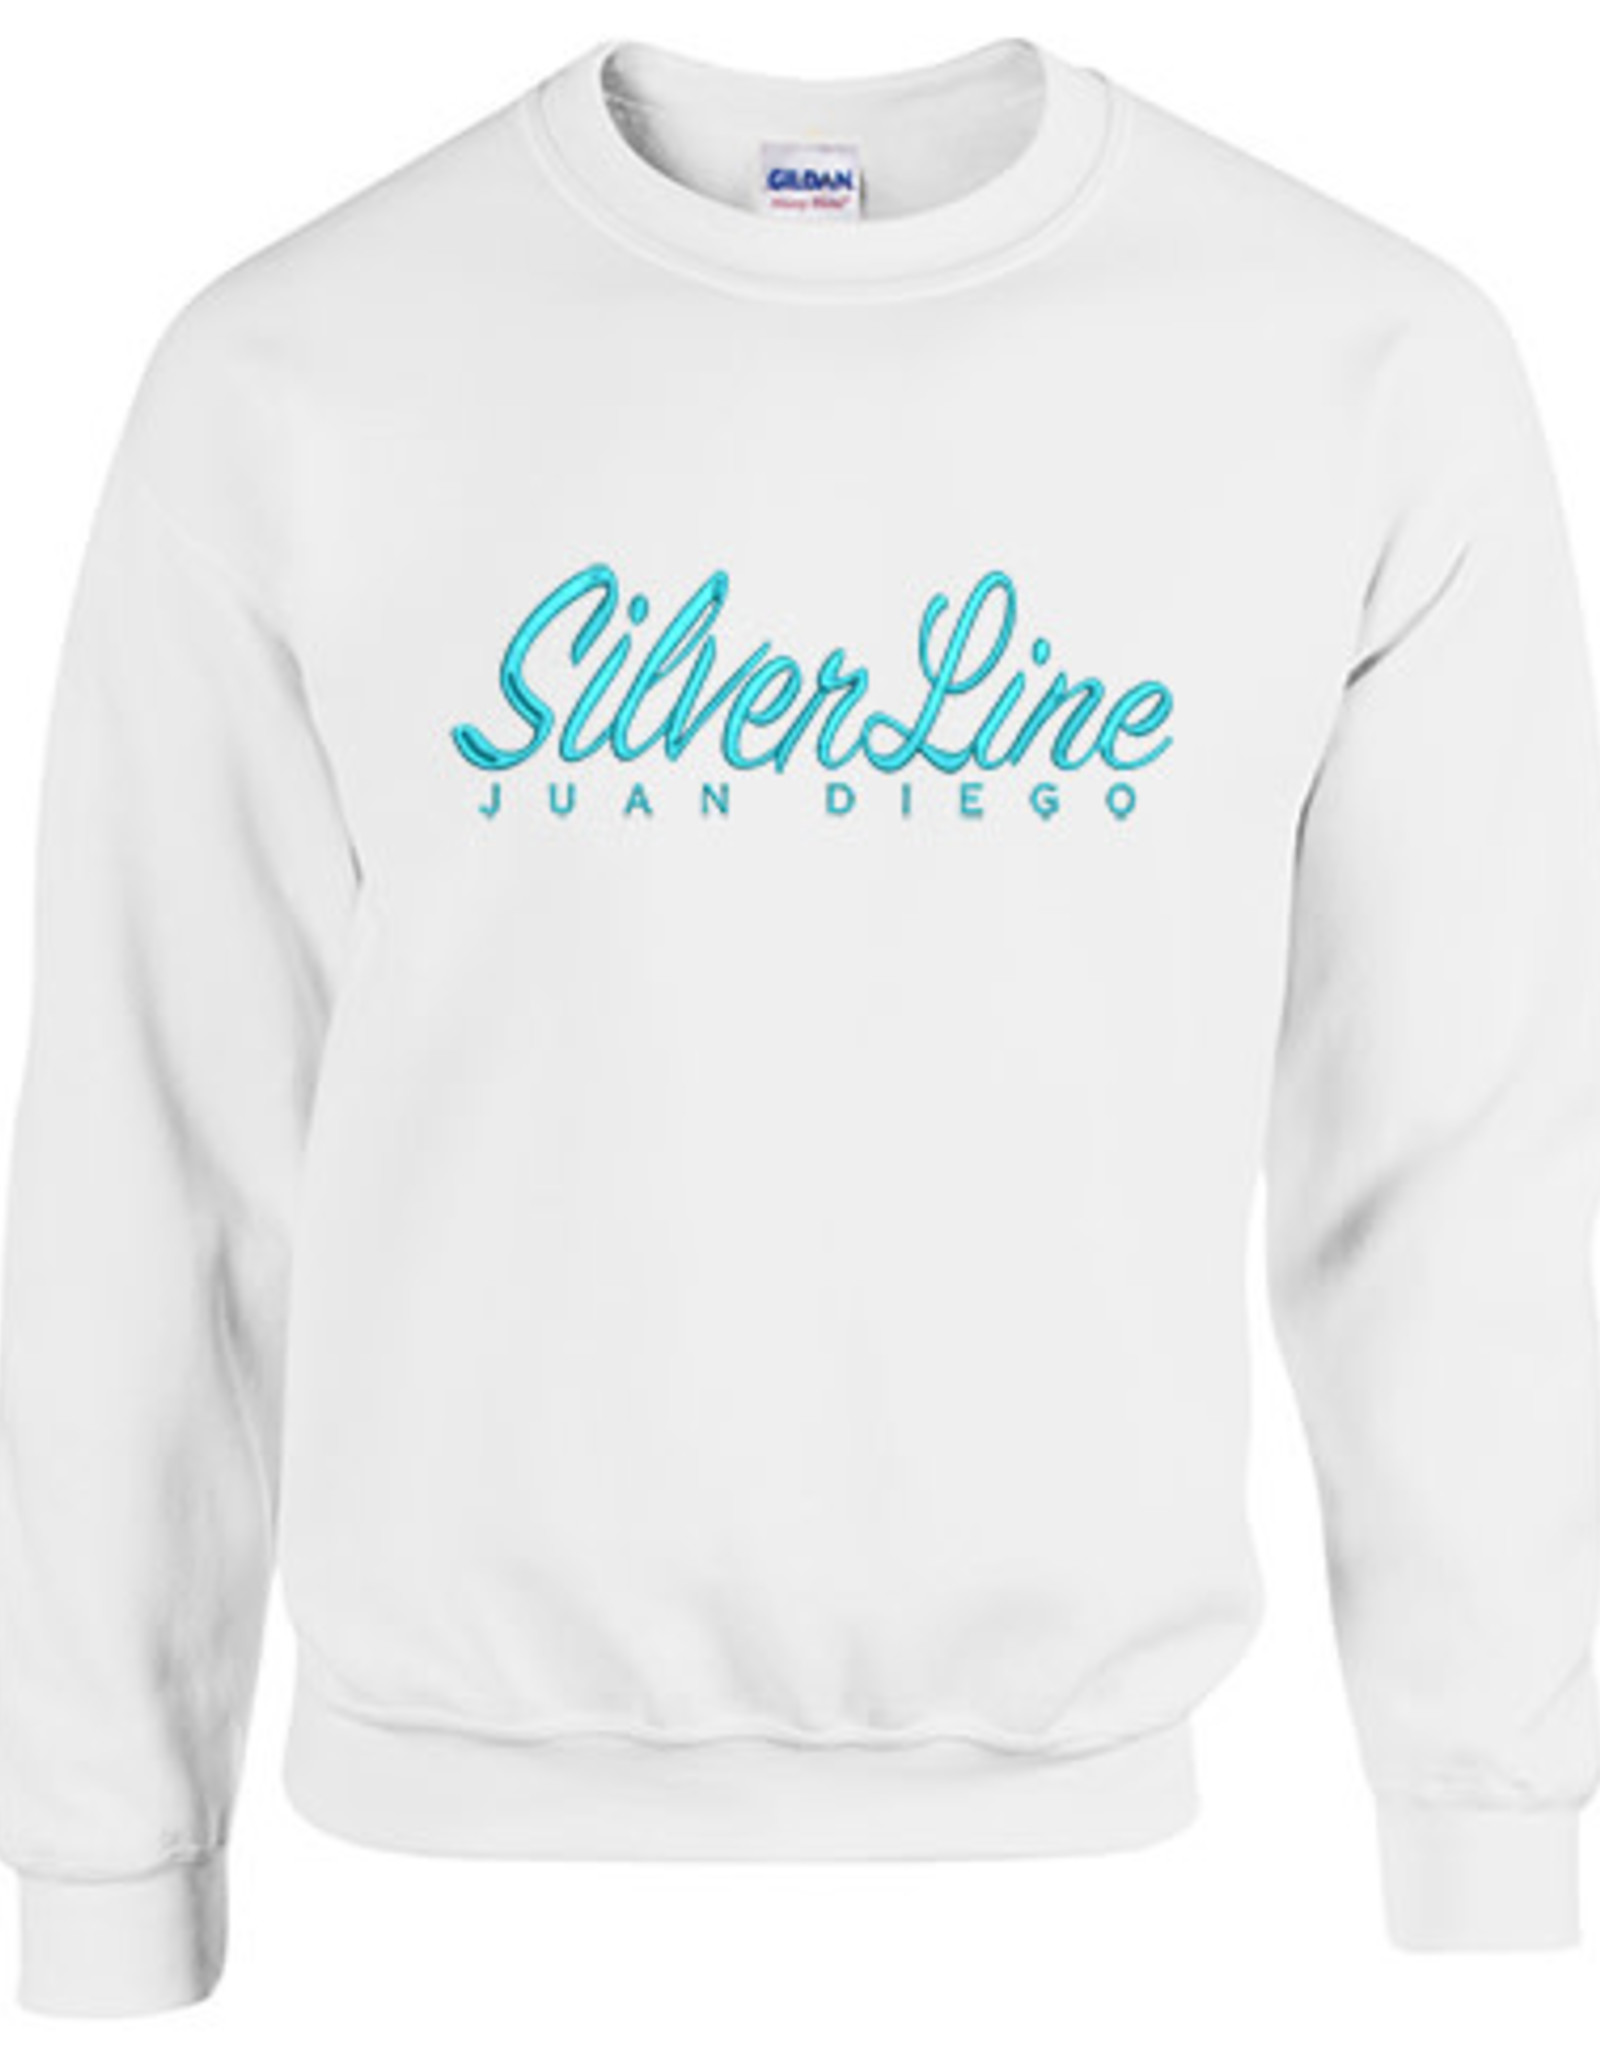 NON-UNIFORM JD SilverLine Embroidered Sweatshirt